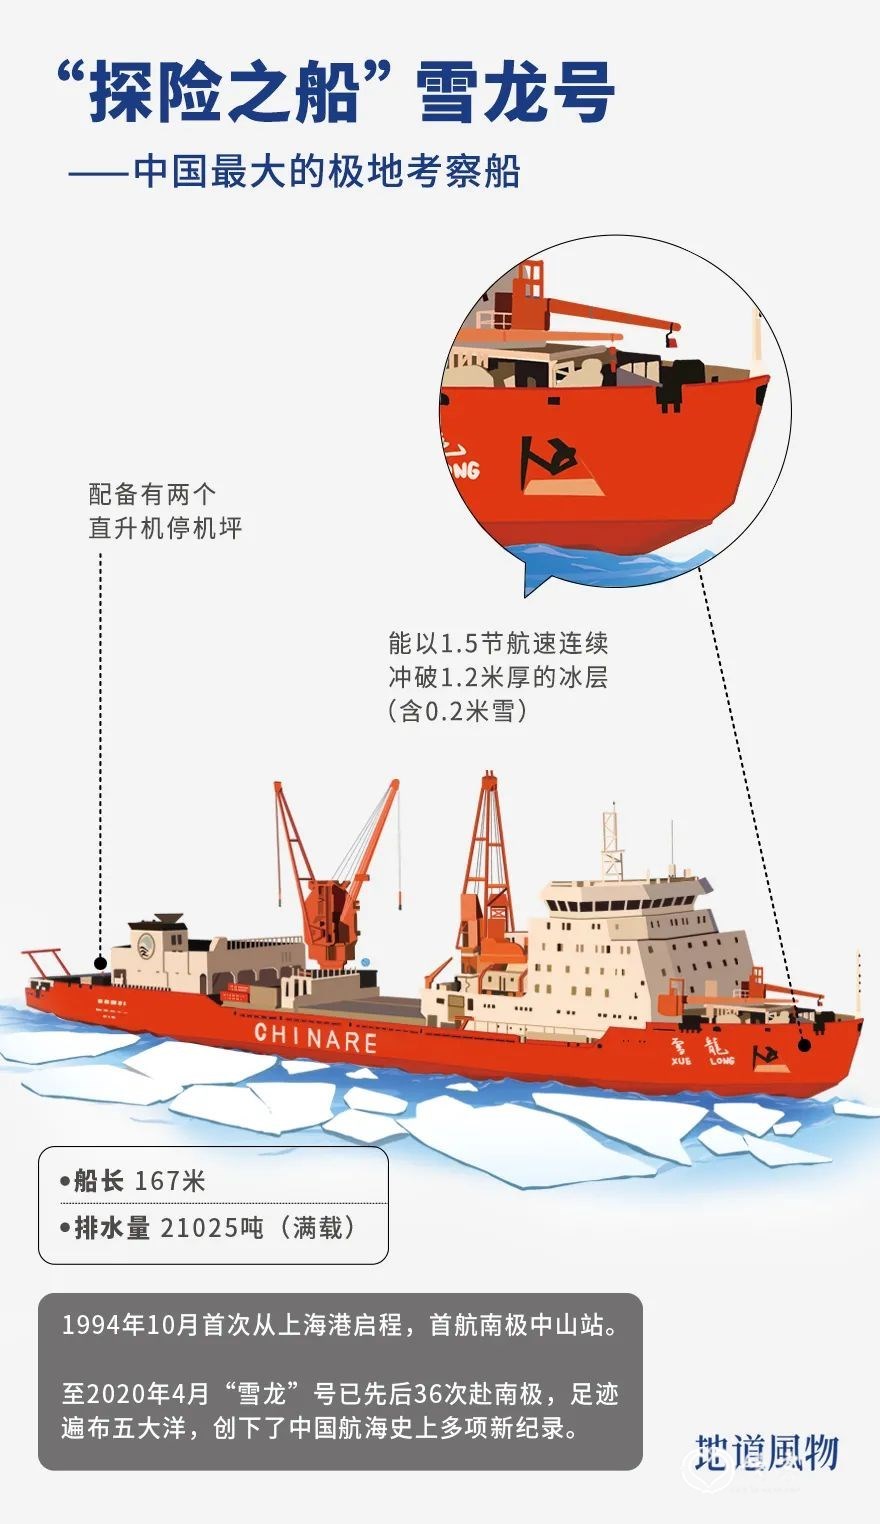 ▲ 雪龙号极地考察船。 插画/艺眼文化，设计/刘航